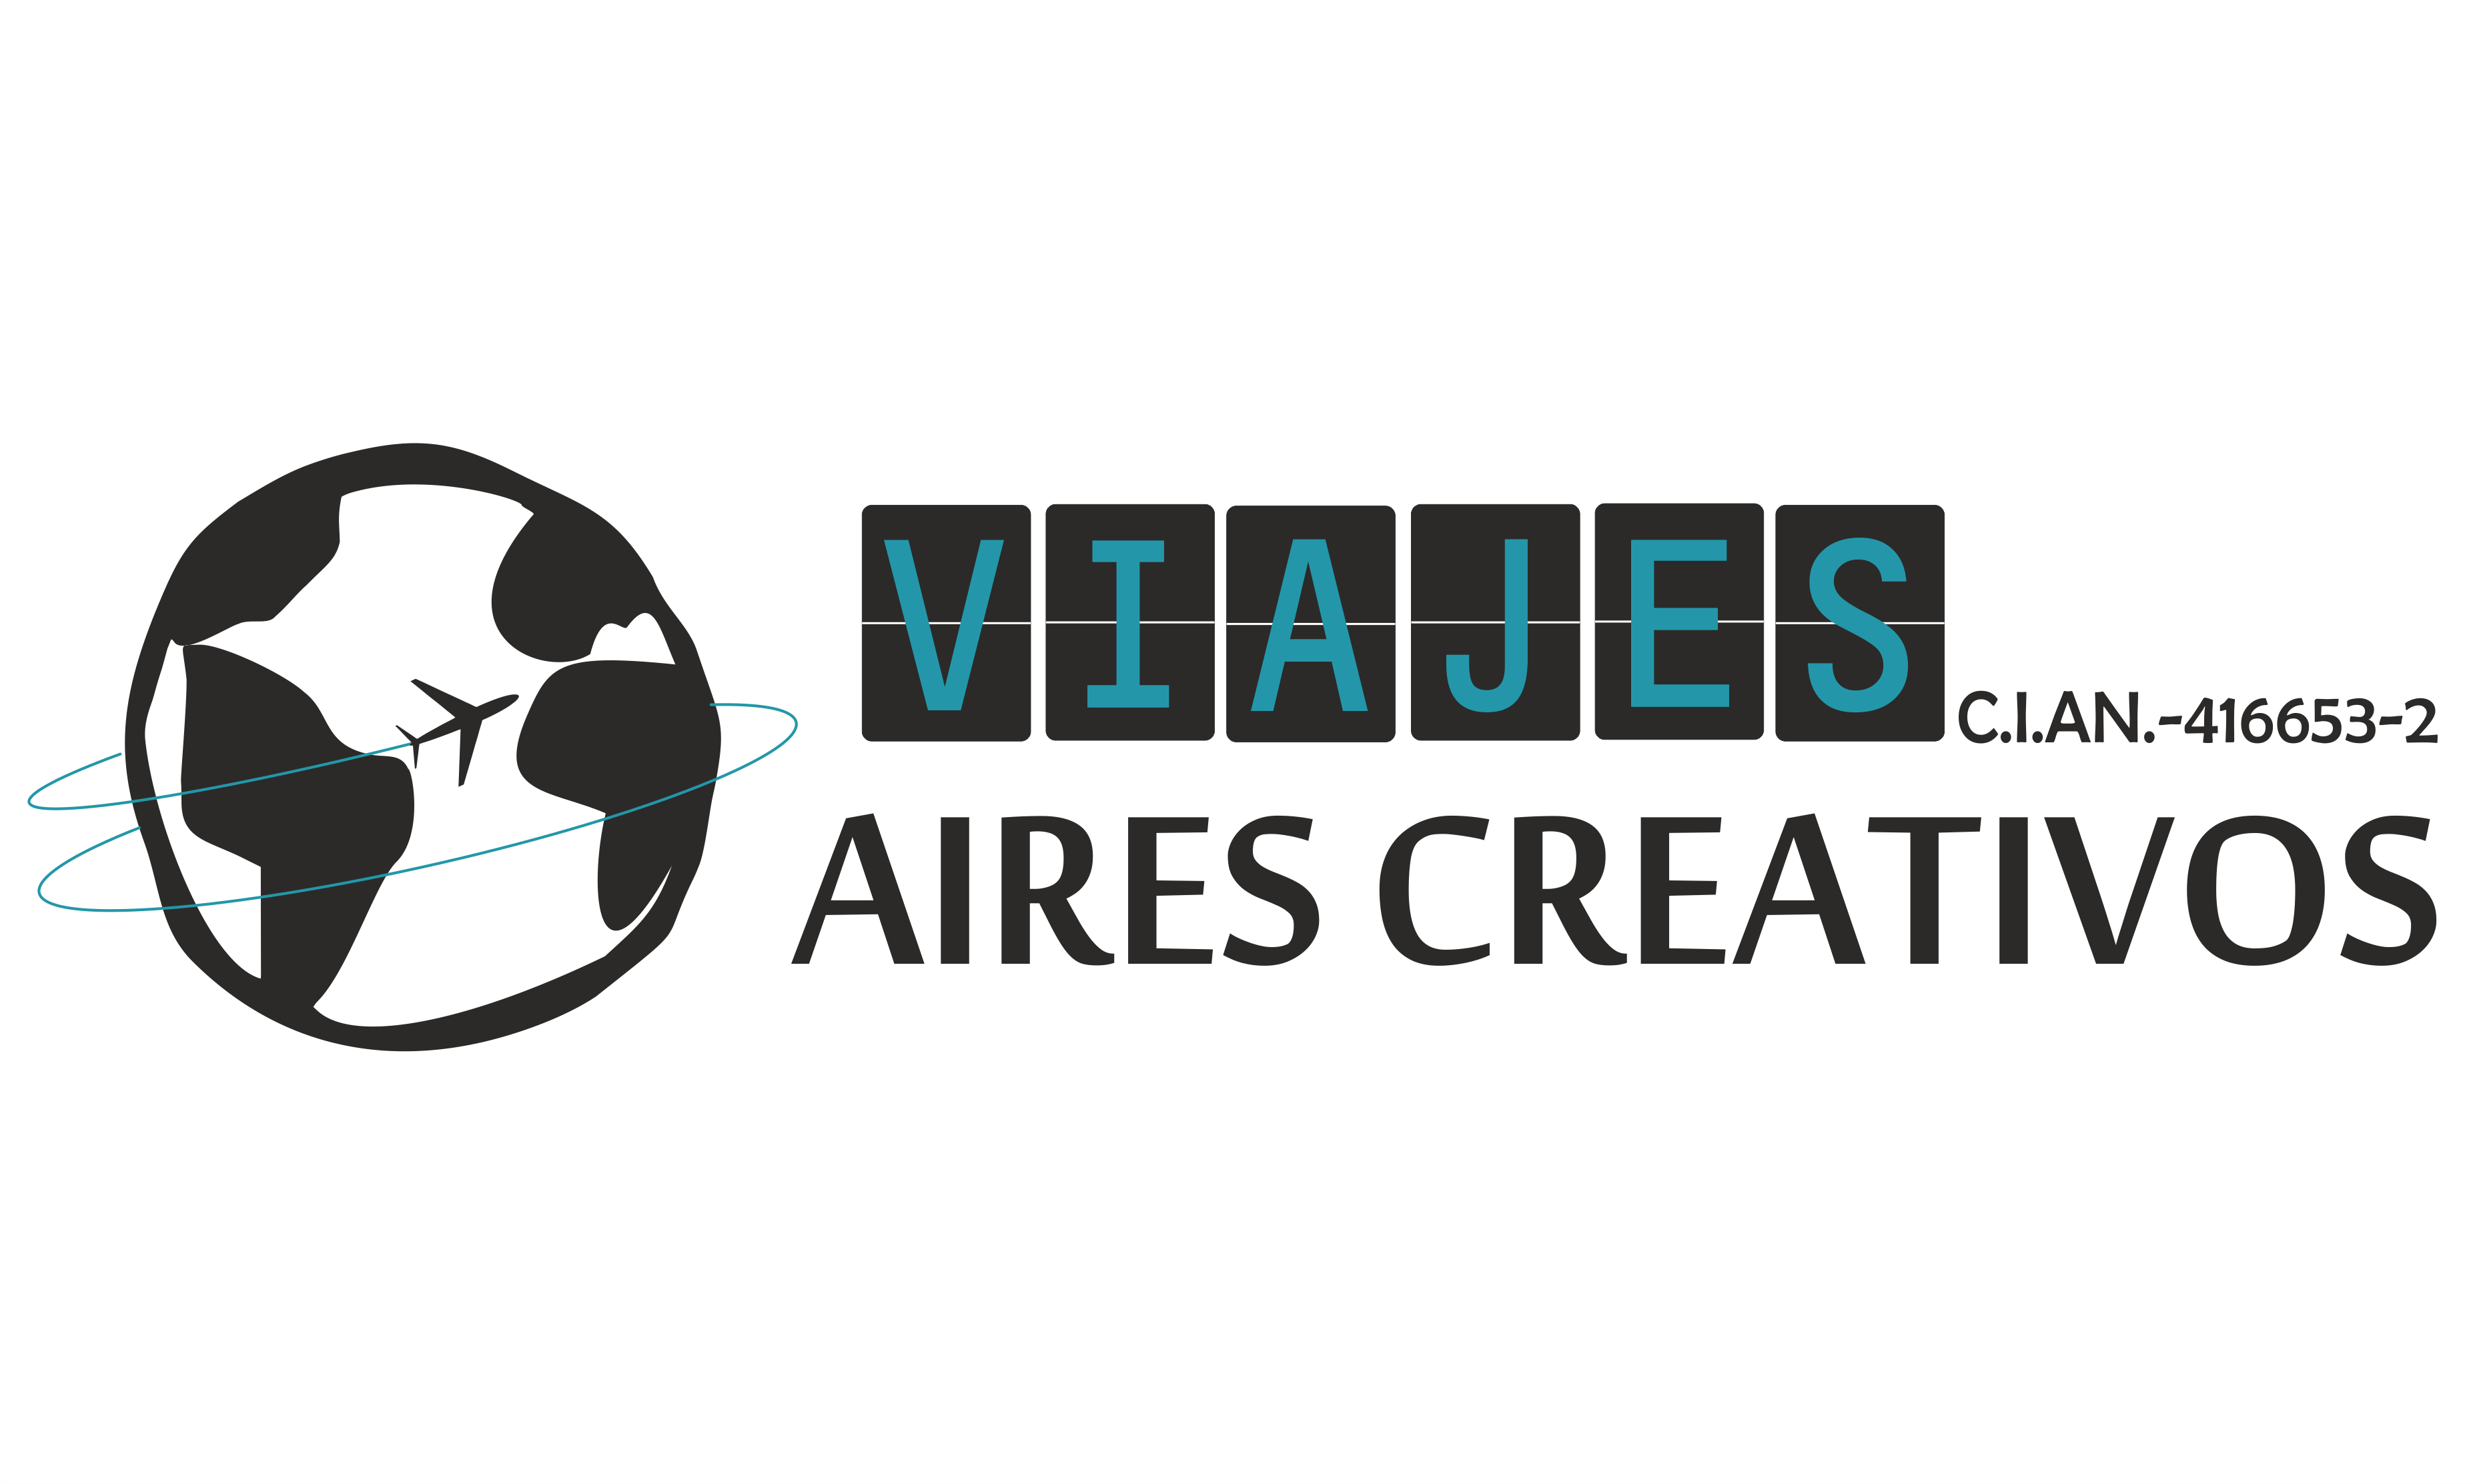 Viajes Aires Creativos